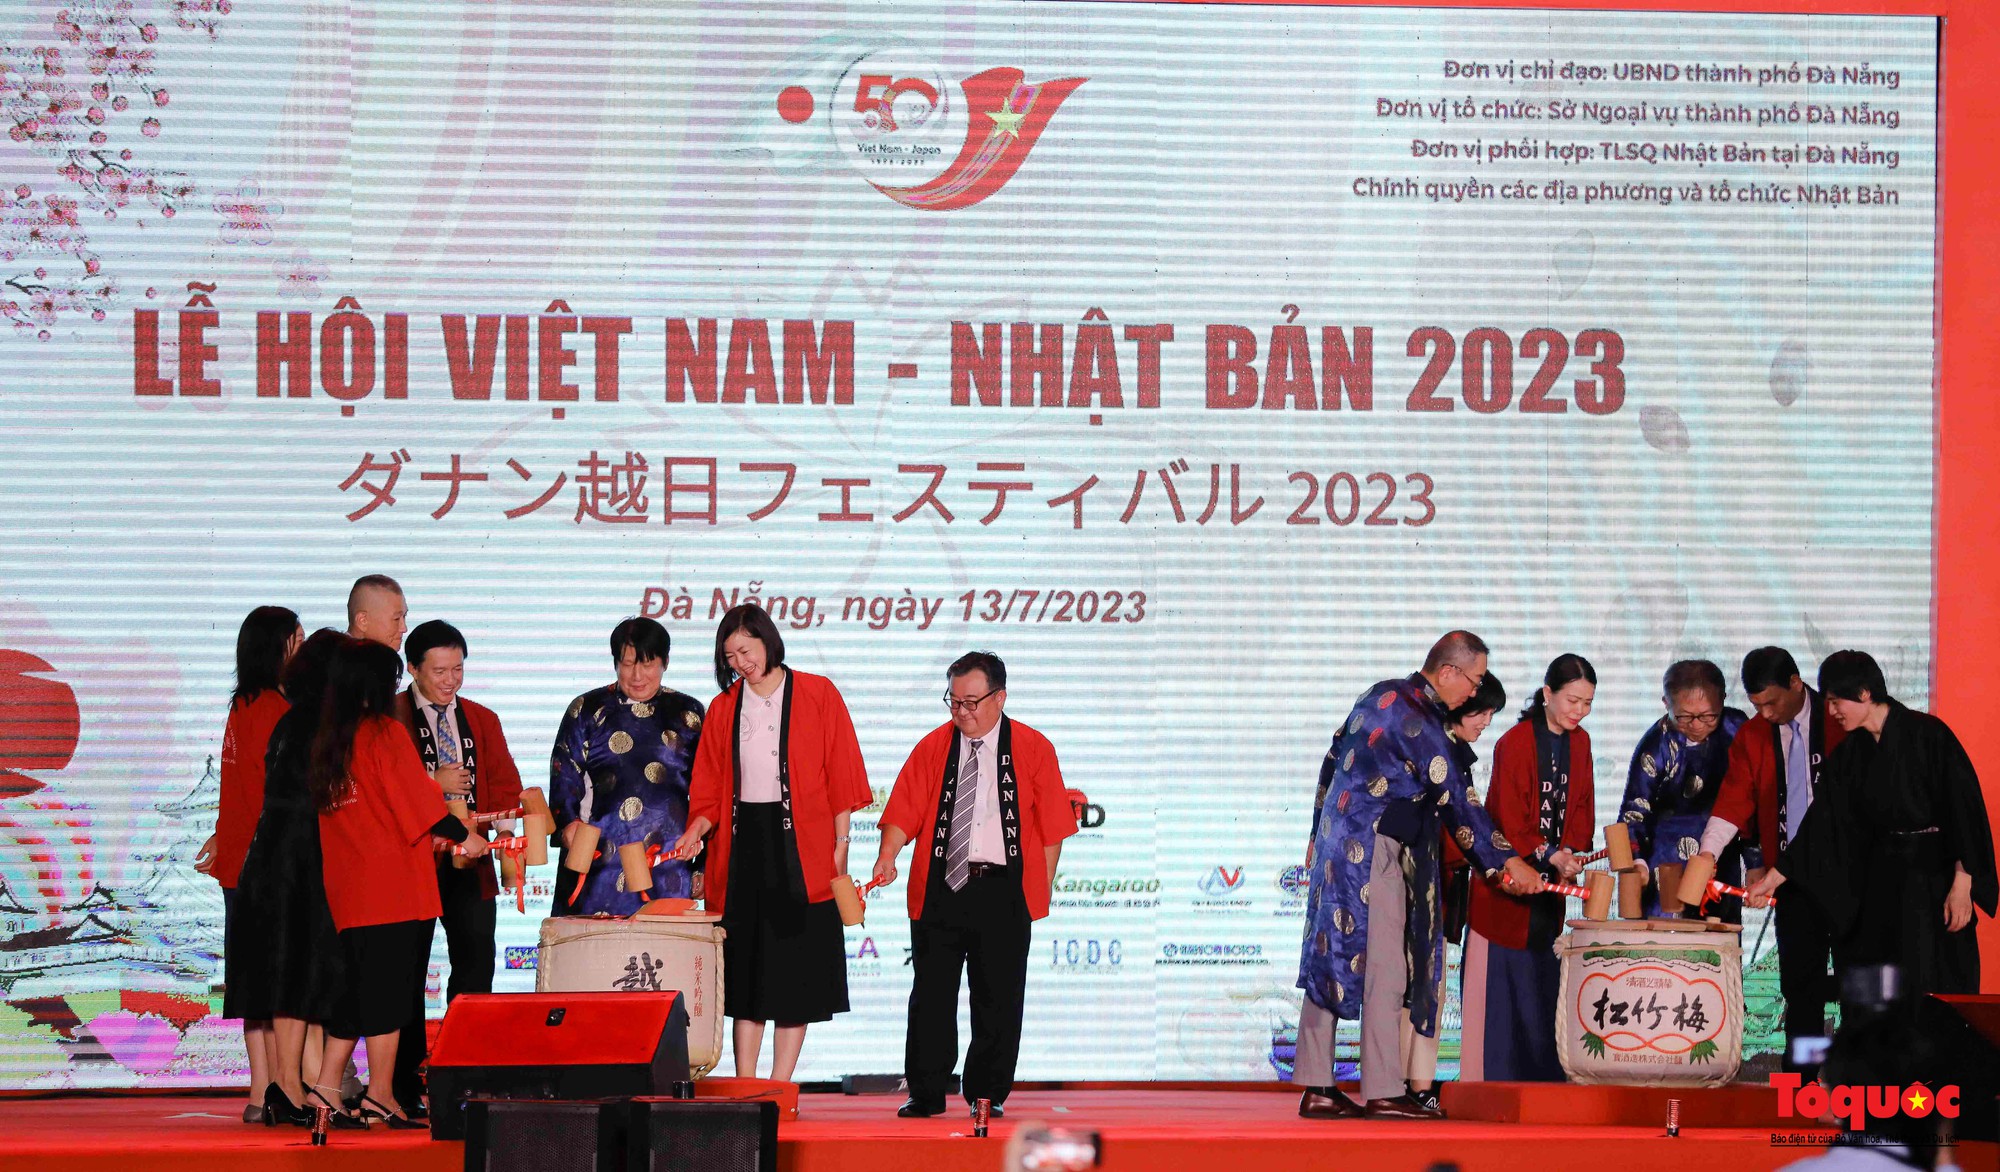 Khai mạc Lễ hội Việt Nam – Nhật Bản 2023 - Ảnh 11.